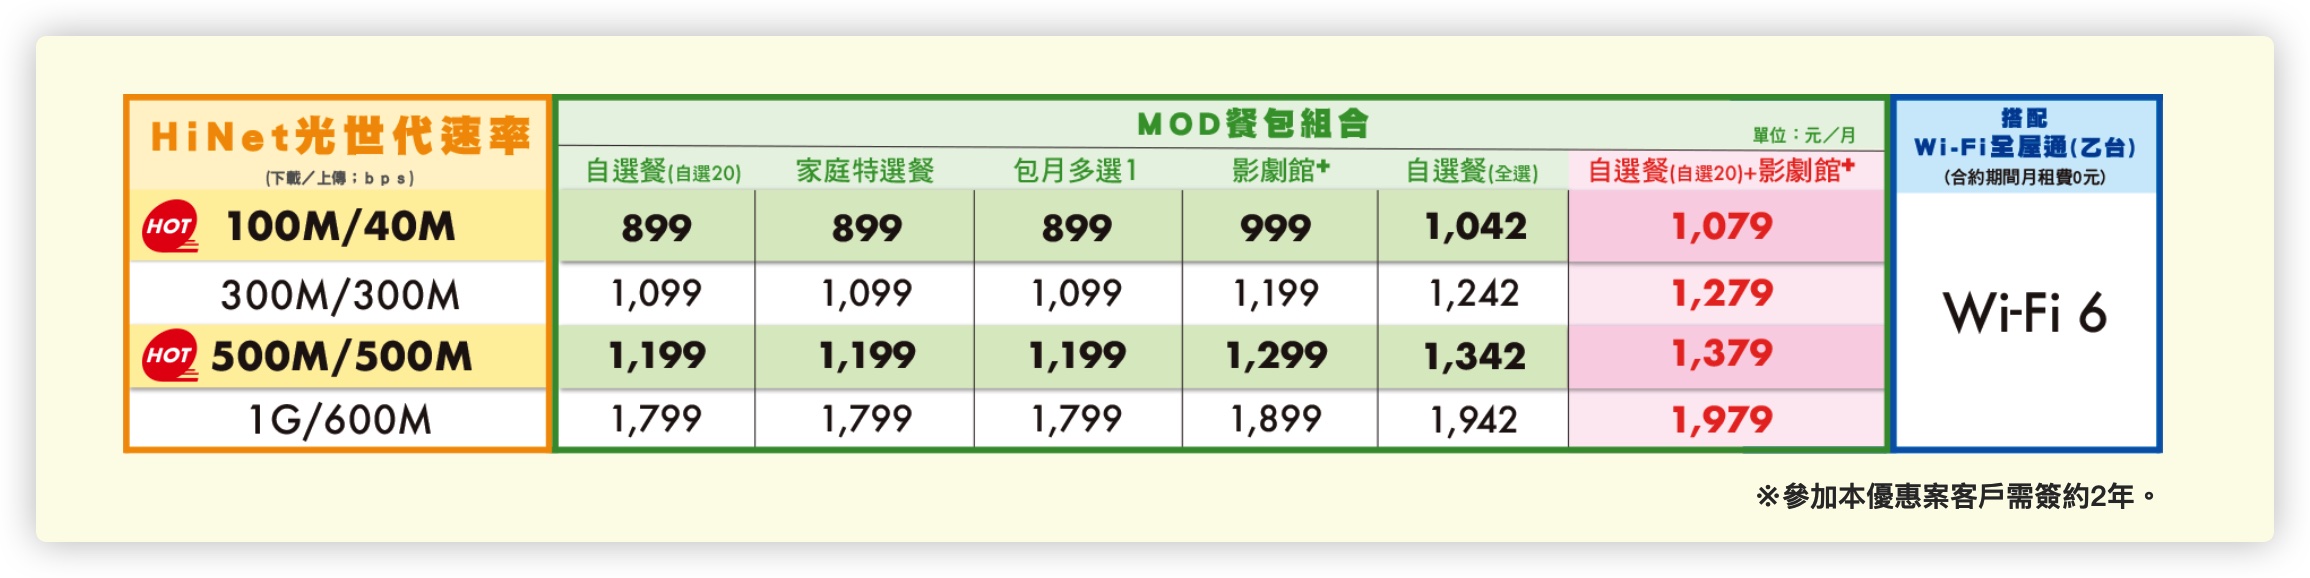 中華電信 光世代 上傳速度 升級 500M 300M